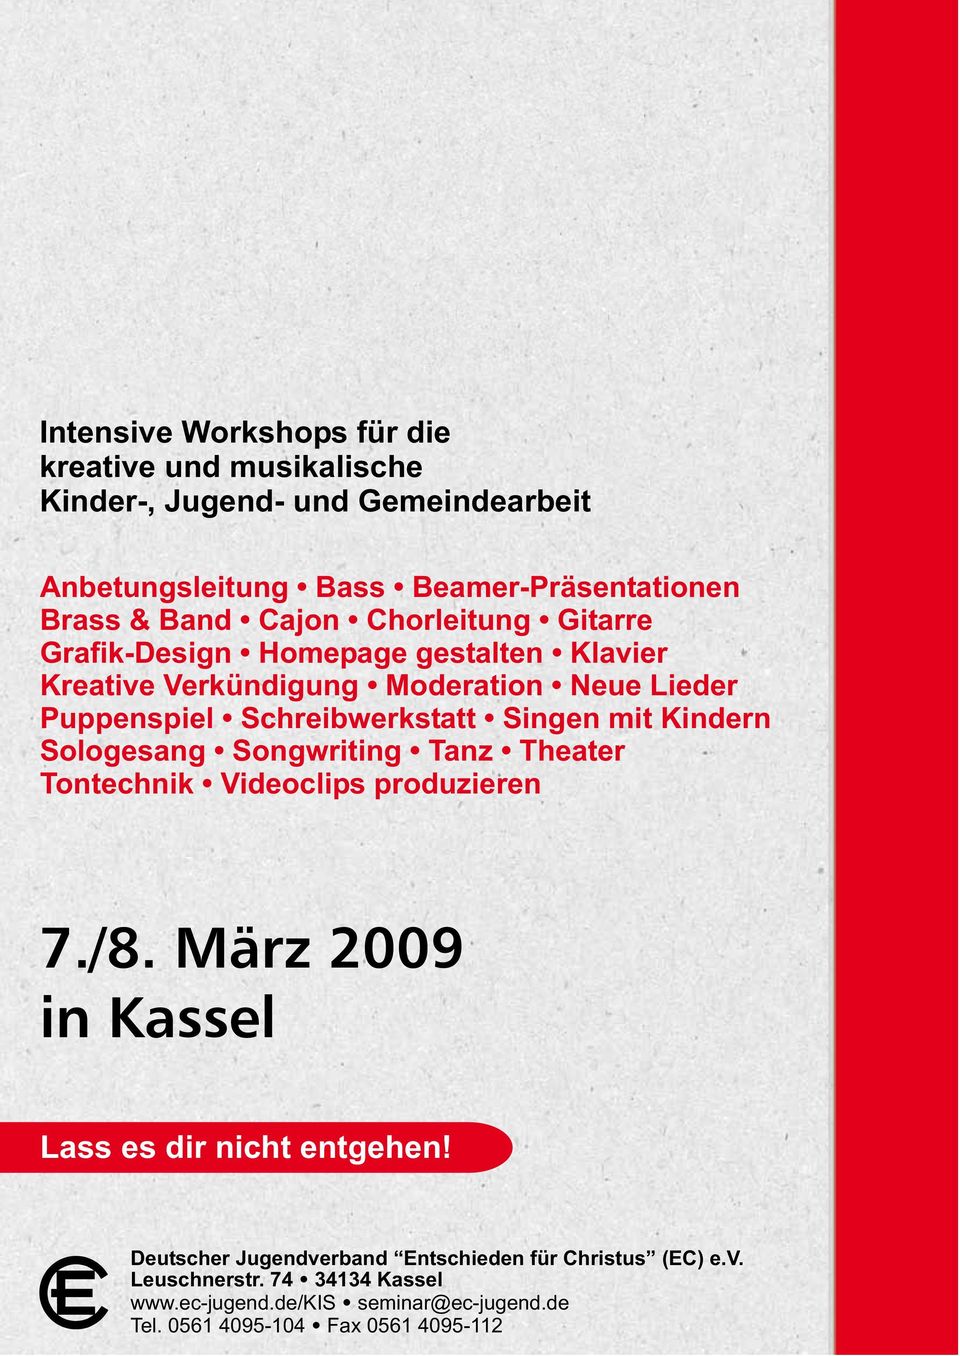 Tanz Theater Tontechnik Videoclips produzieren 7./8. März 2009 in Kassel Lass es dir nicht entgehen! Deutscher Jugendverband Entschieden für Christus (EC) e.v. Deutscher Leuschnerstr.